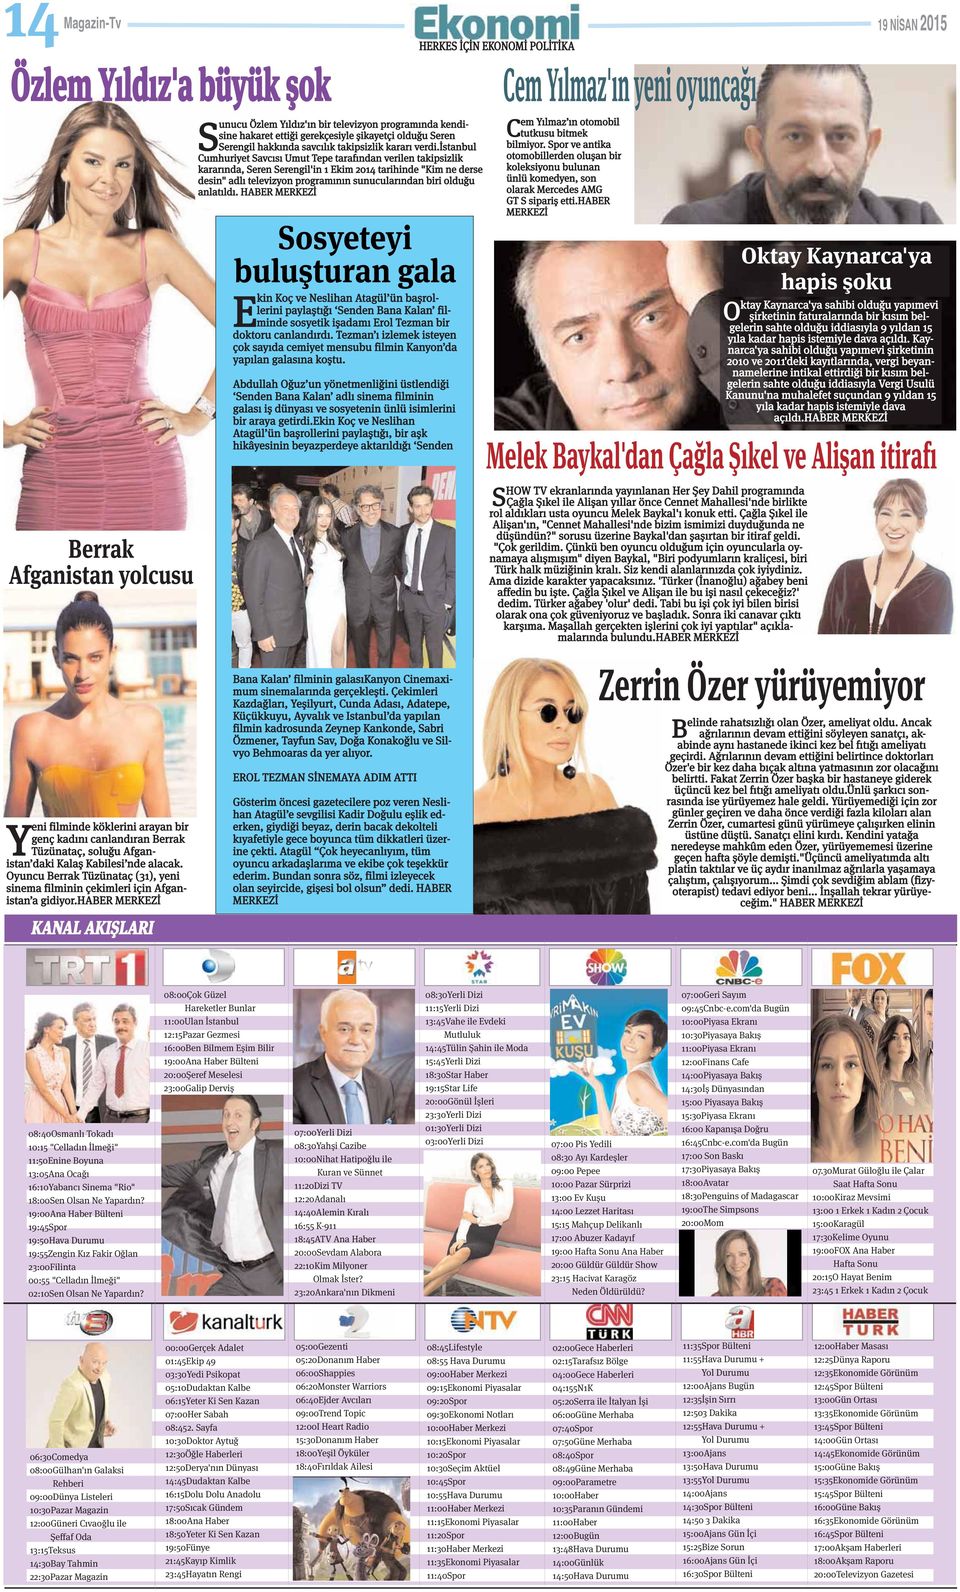 istanbul Cumhuriyet Savcısı Umut Tepe tarafından verilen takipsizlik kararında, Seren Serengil'in 1 Ekim 2014 tarihinde "Kim ne derse desin" adlı televizyon programının sunucularından biri olduğu